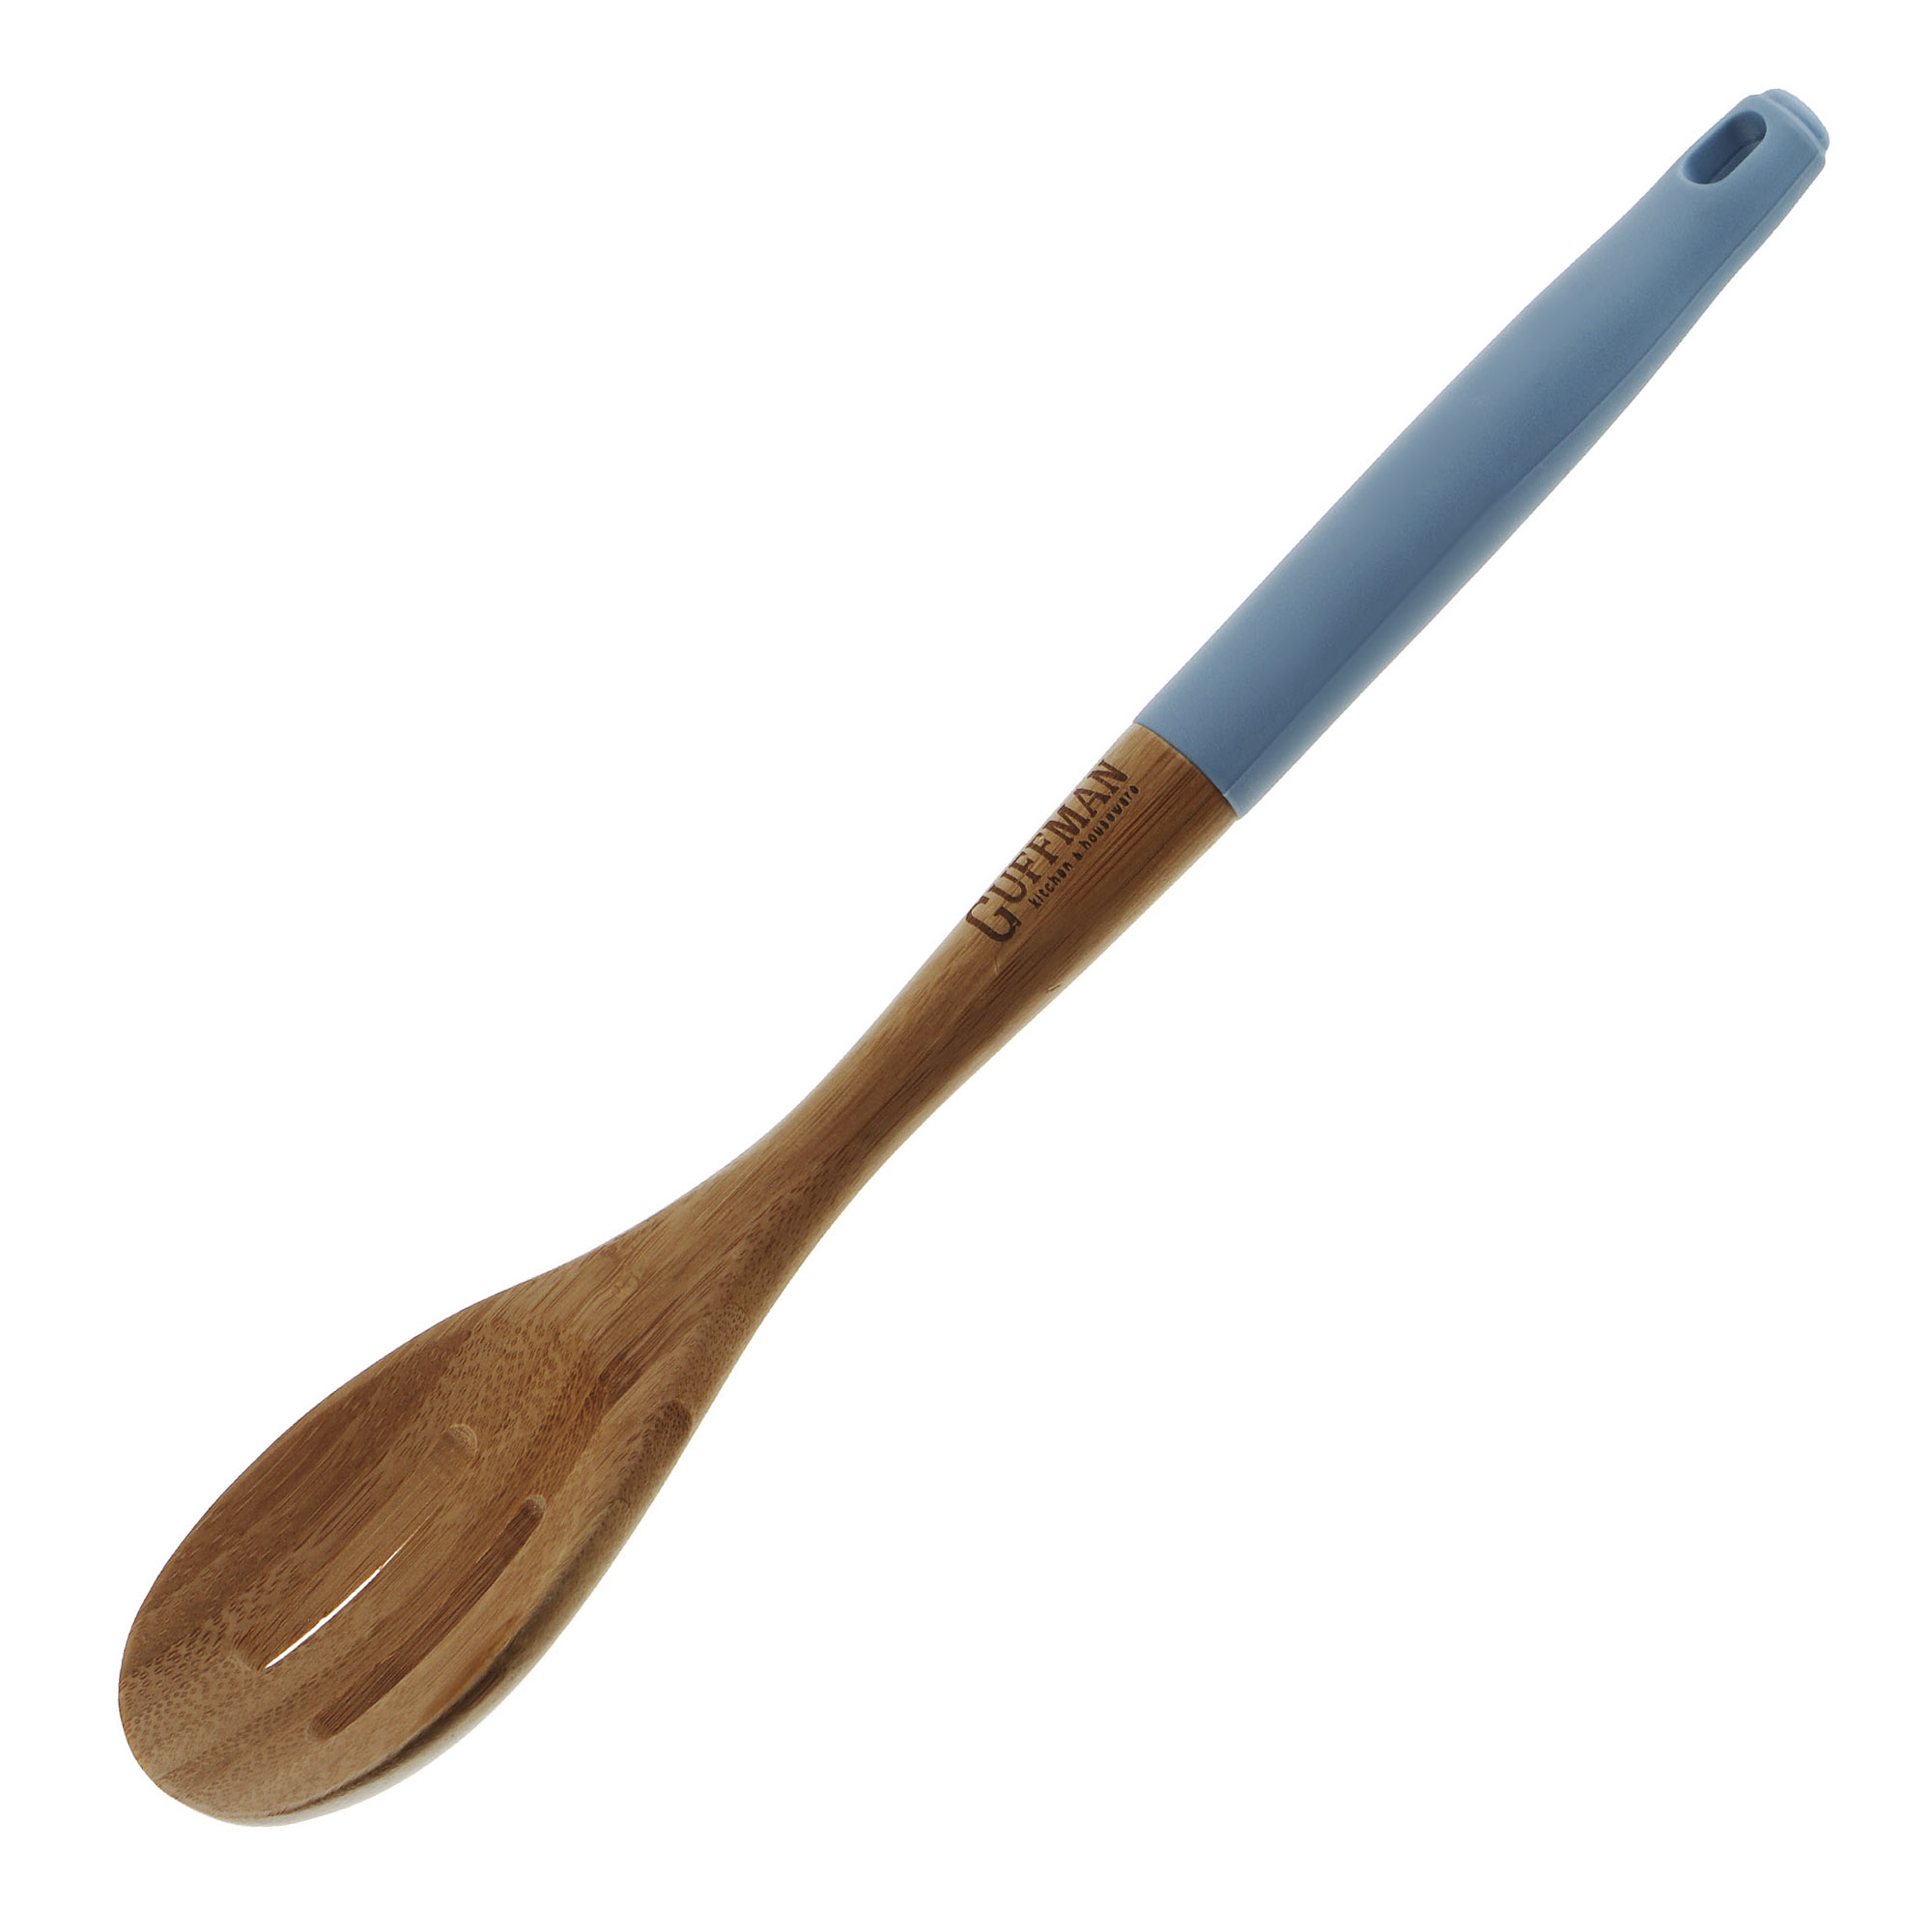 Ложка бамбуковая Guffman с прорезями 36 см голубая ложка для спагетти guffman casa бамбук 33 см голубая